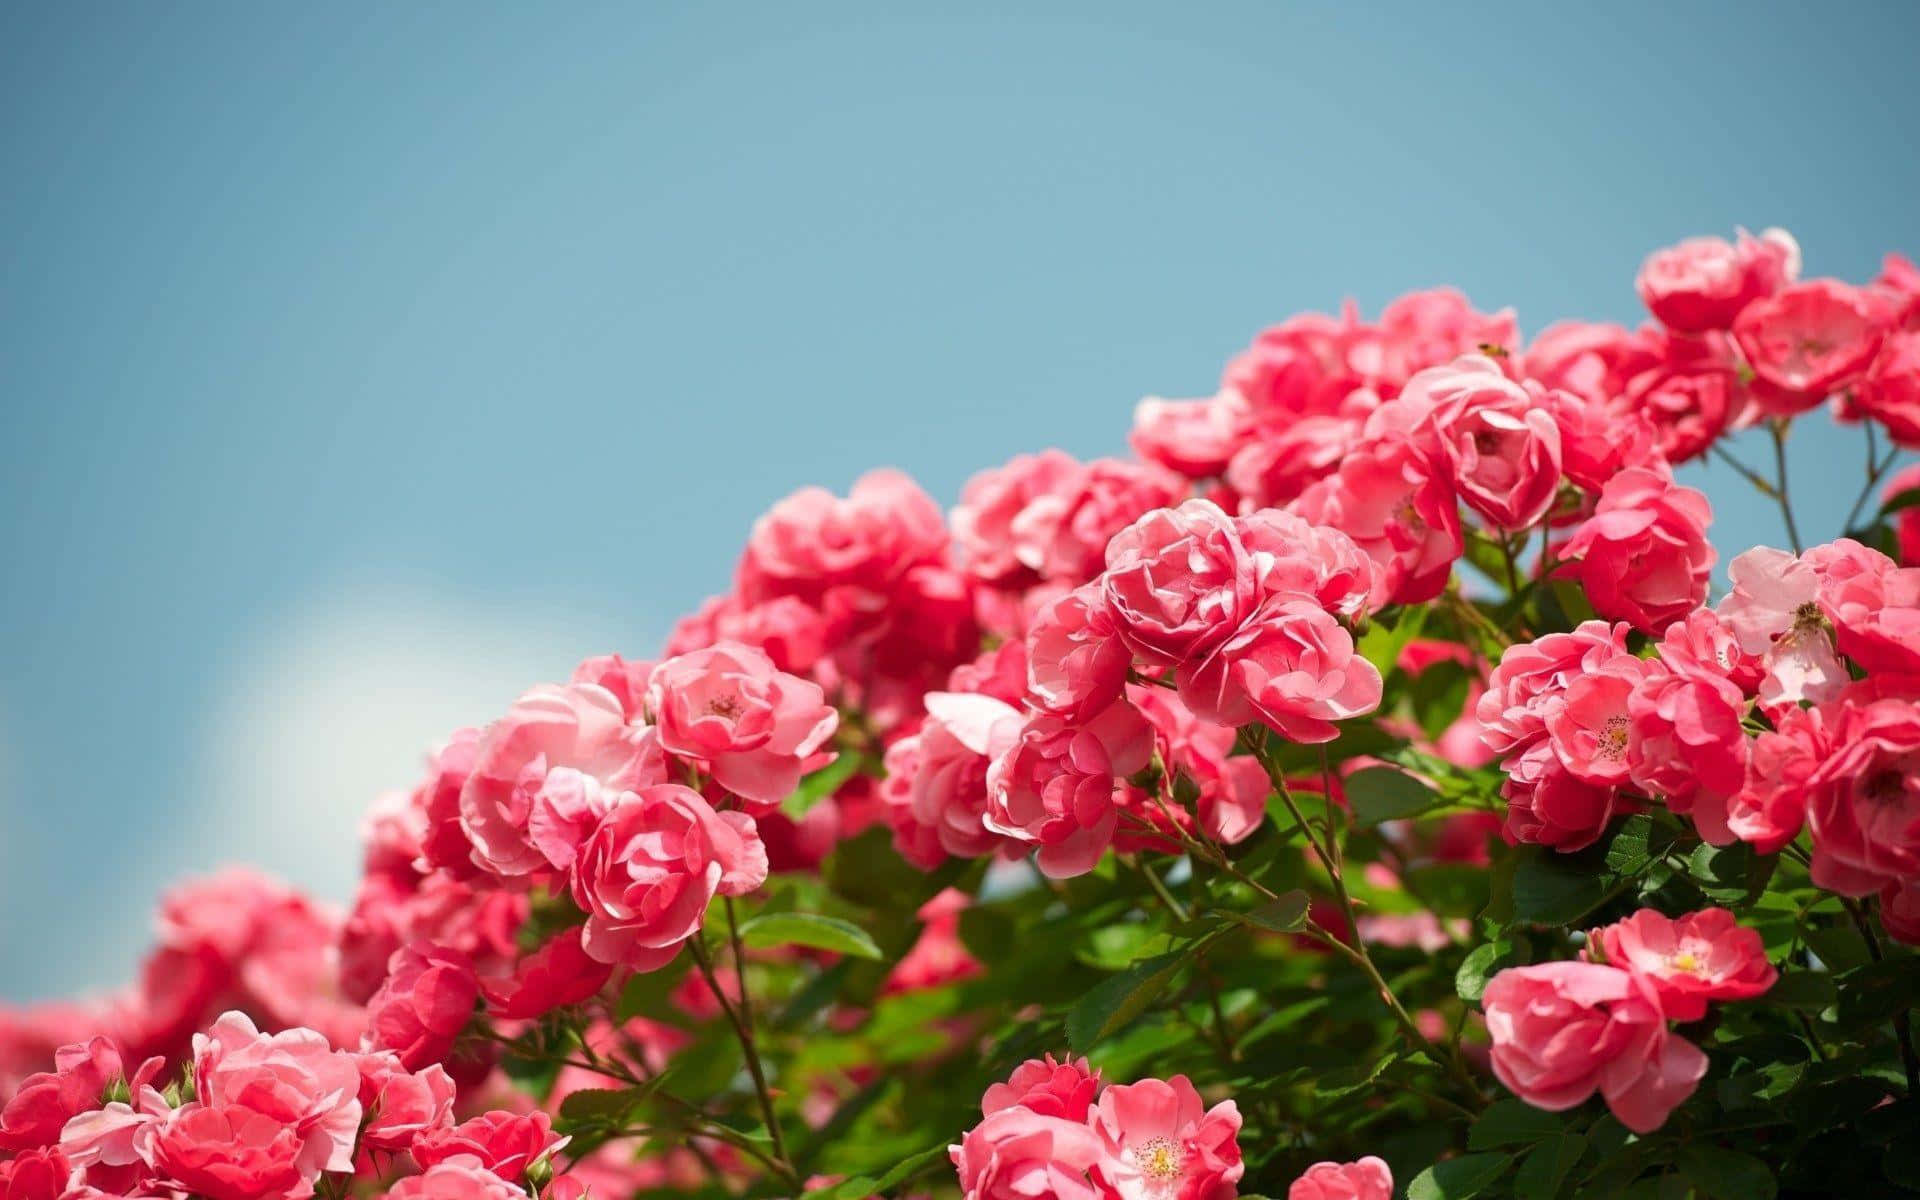 Hình ảnh hoa hồng là sự lựa chọn phổ biến cho những ai yêu thích sự sang trọng và lãng mạn. Không chỉ là loại hoa phổ biến nhất trên thế giới, hoa hồng còn mang ý nghĩa đặc biệt trong tình yêu và sự hoàn hảo. Nếu bạn muốn tìm một hình ảnh đẹp của hoa hồng, hãy xem qua danh sách hình nền dưới đây.